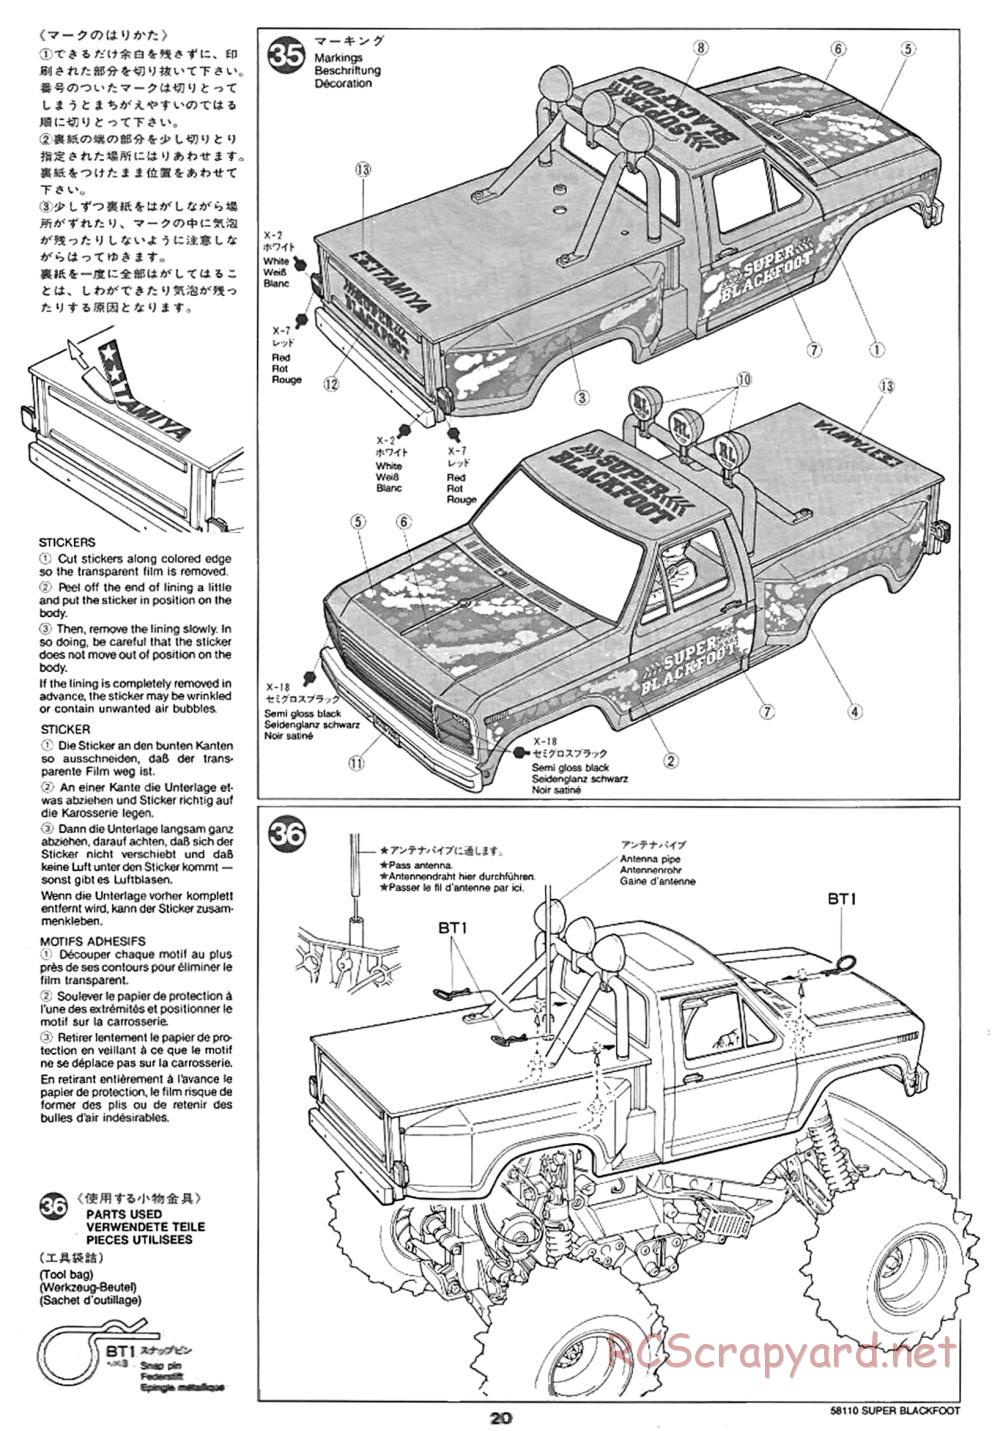 Tamiya - Super Blackfoot Chassis - Manual - Page 20